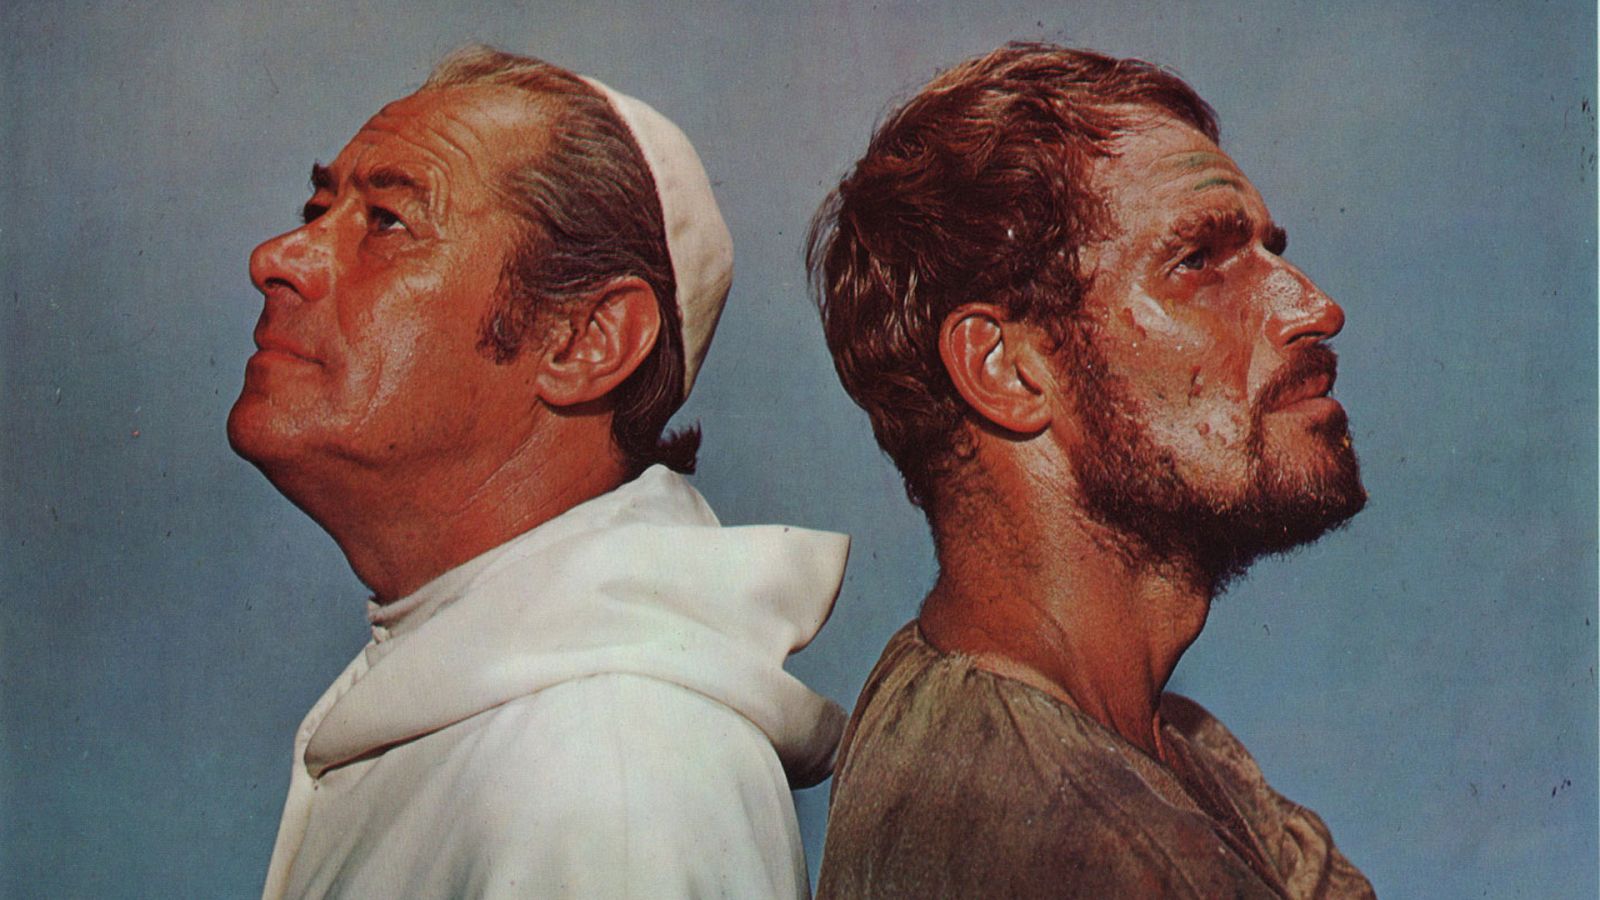 'El tormento y el éxtasis', con Charlton Heston convertido en Miguel Ángel